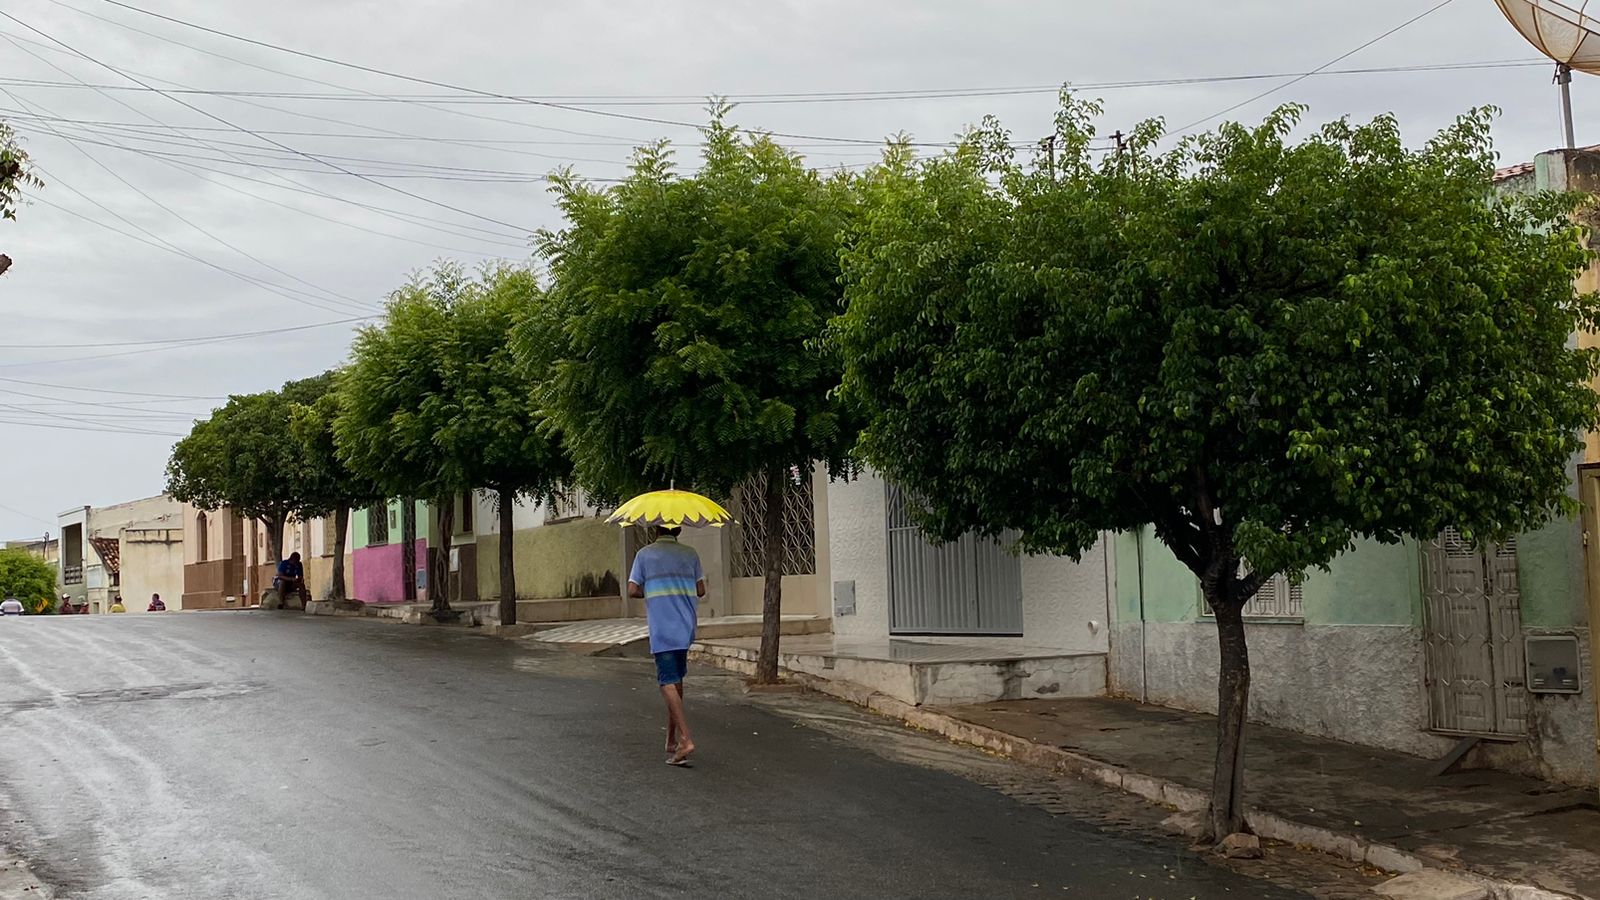 Sistema frontal próximo à Bahia é um dos principais responsáveis pela chuva (FOTO: Marciel Bezerra)